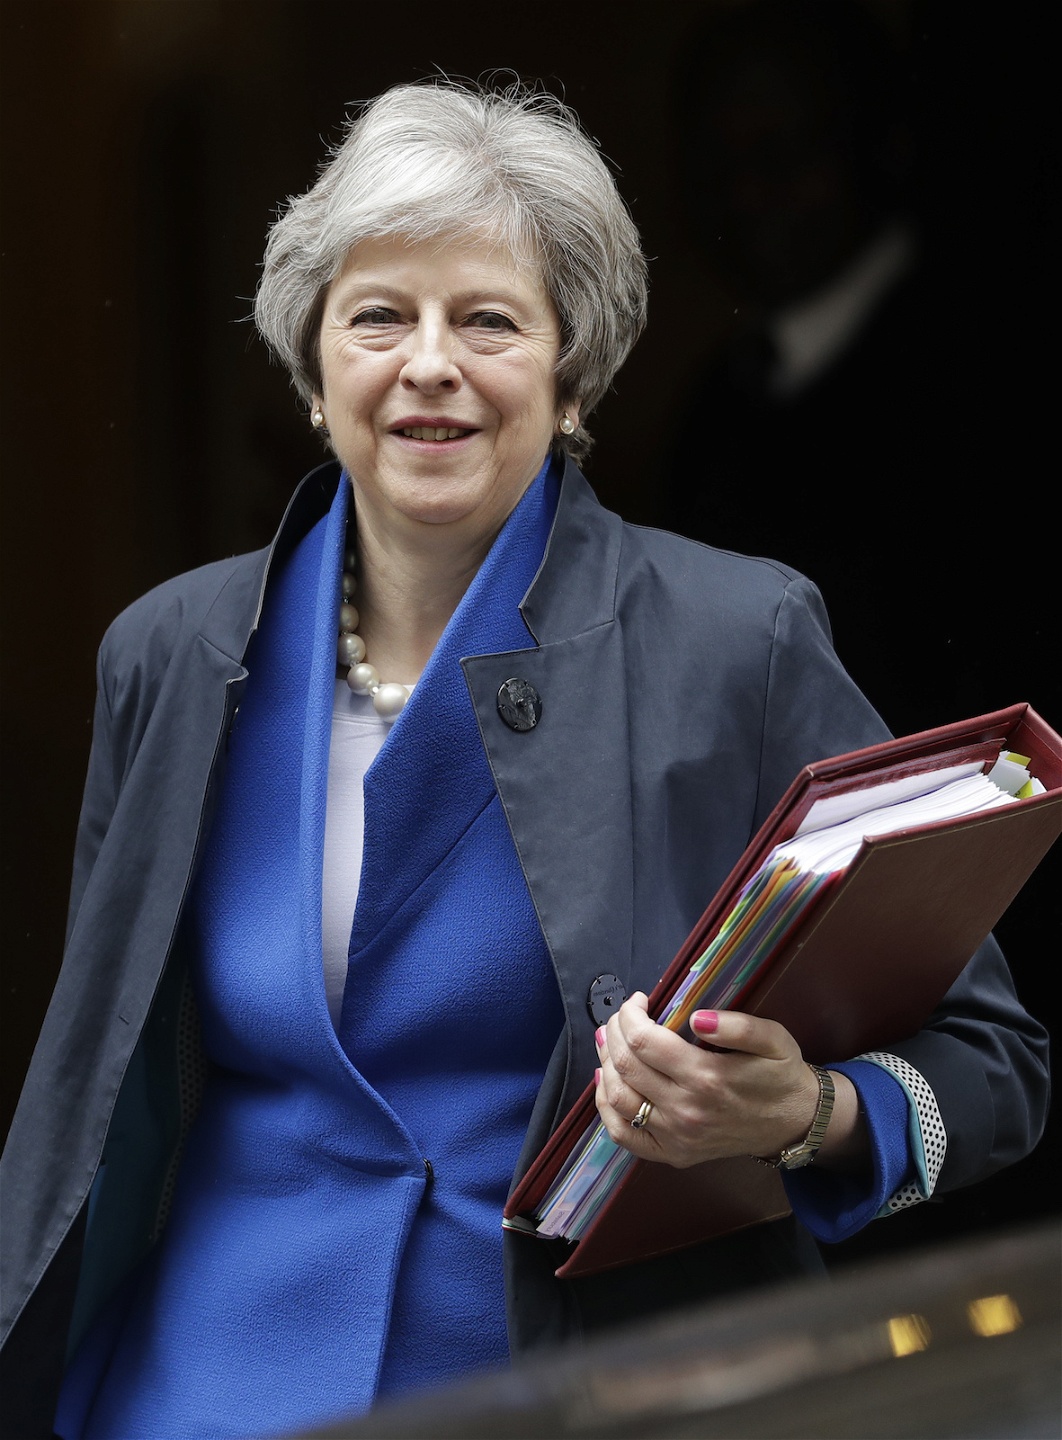 Storbritanniens premiär minister Theresa May var inrikesminister 2012 när det nya reglerna infördes.